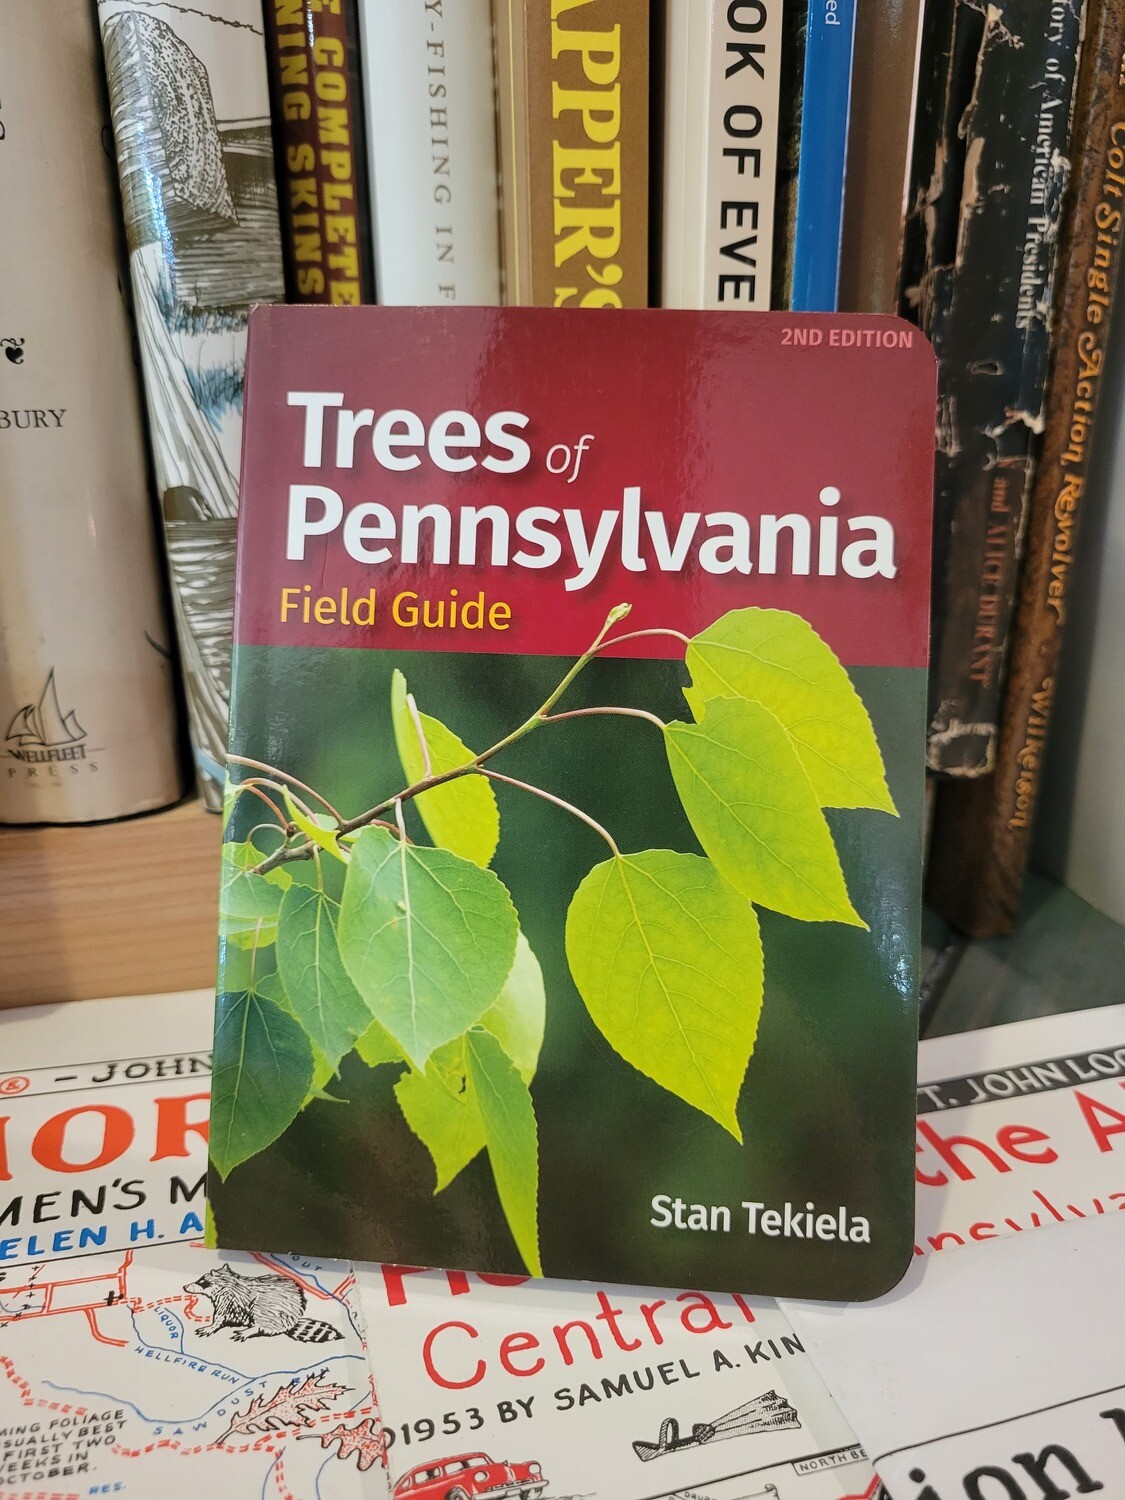 Trees of Pennsylvania Field Guide by Stan Tekiela